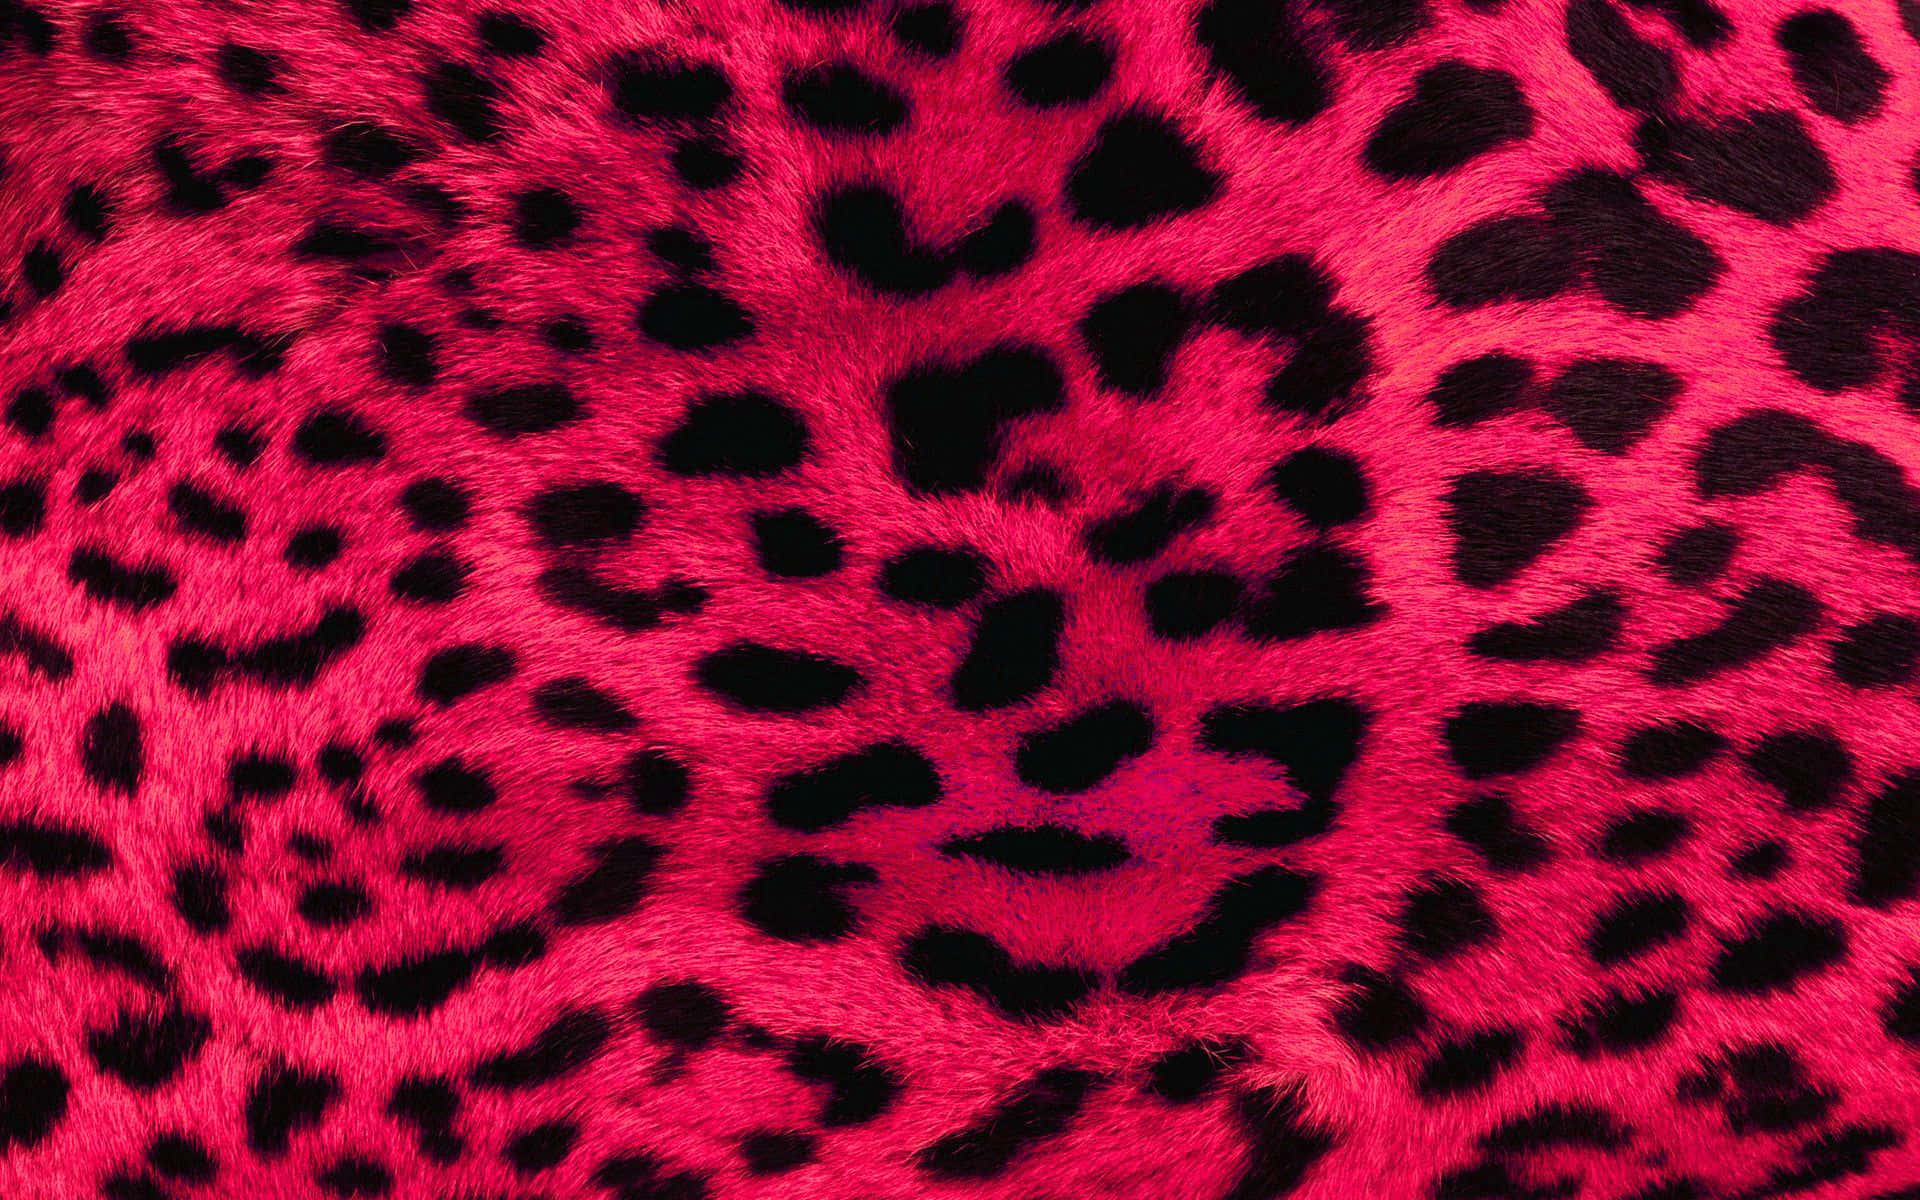 Umaimagem Ampliada De Uma Estampa De Leopardo Rosa Papel de Parede